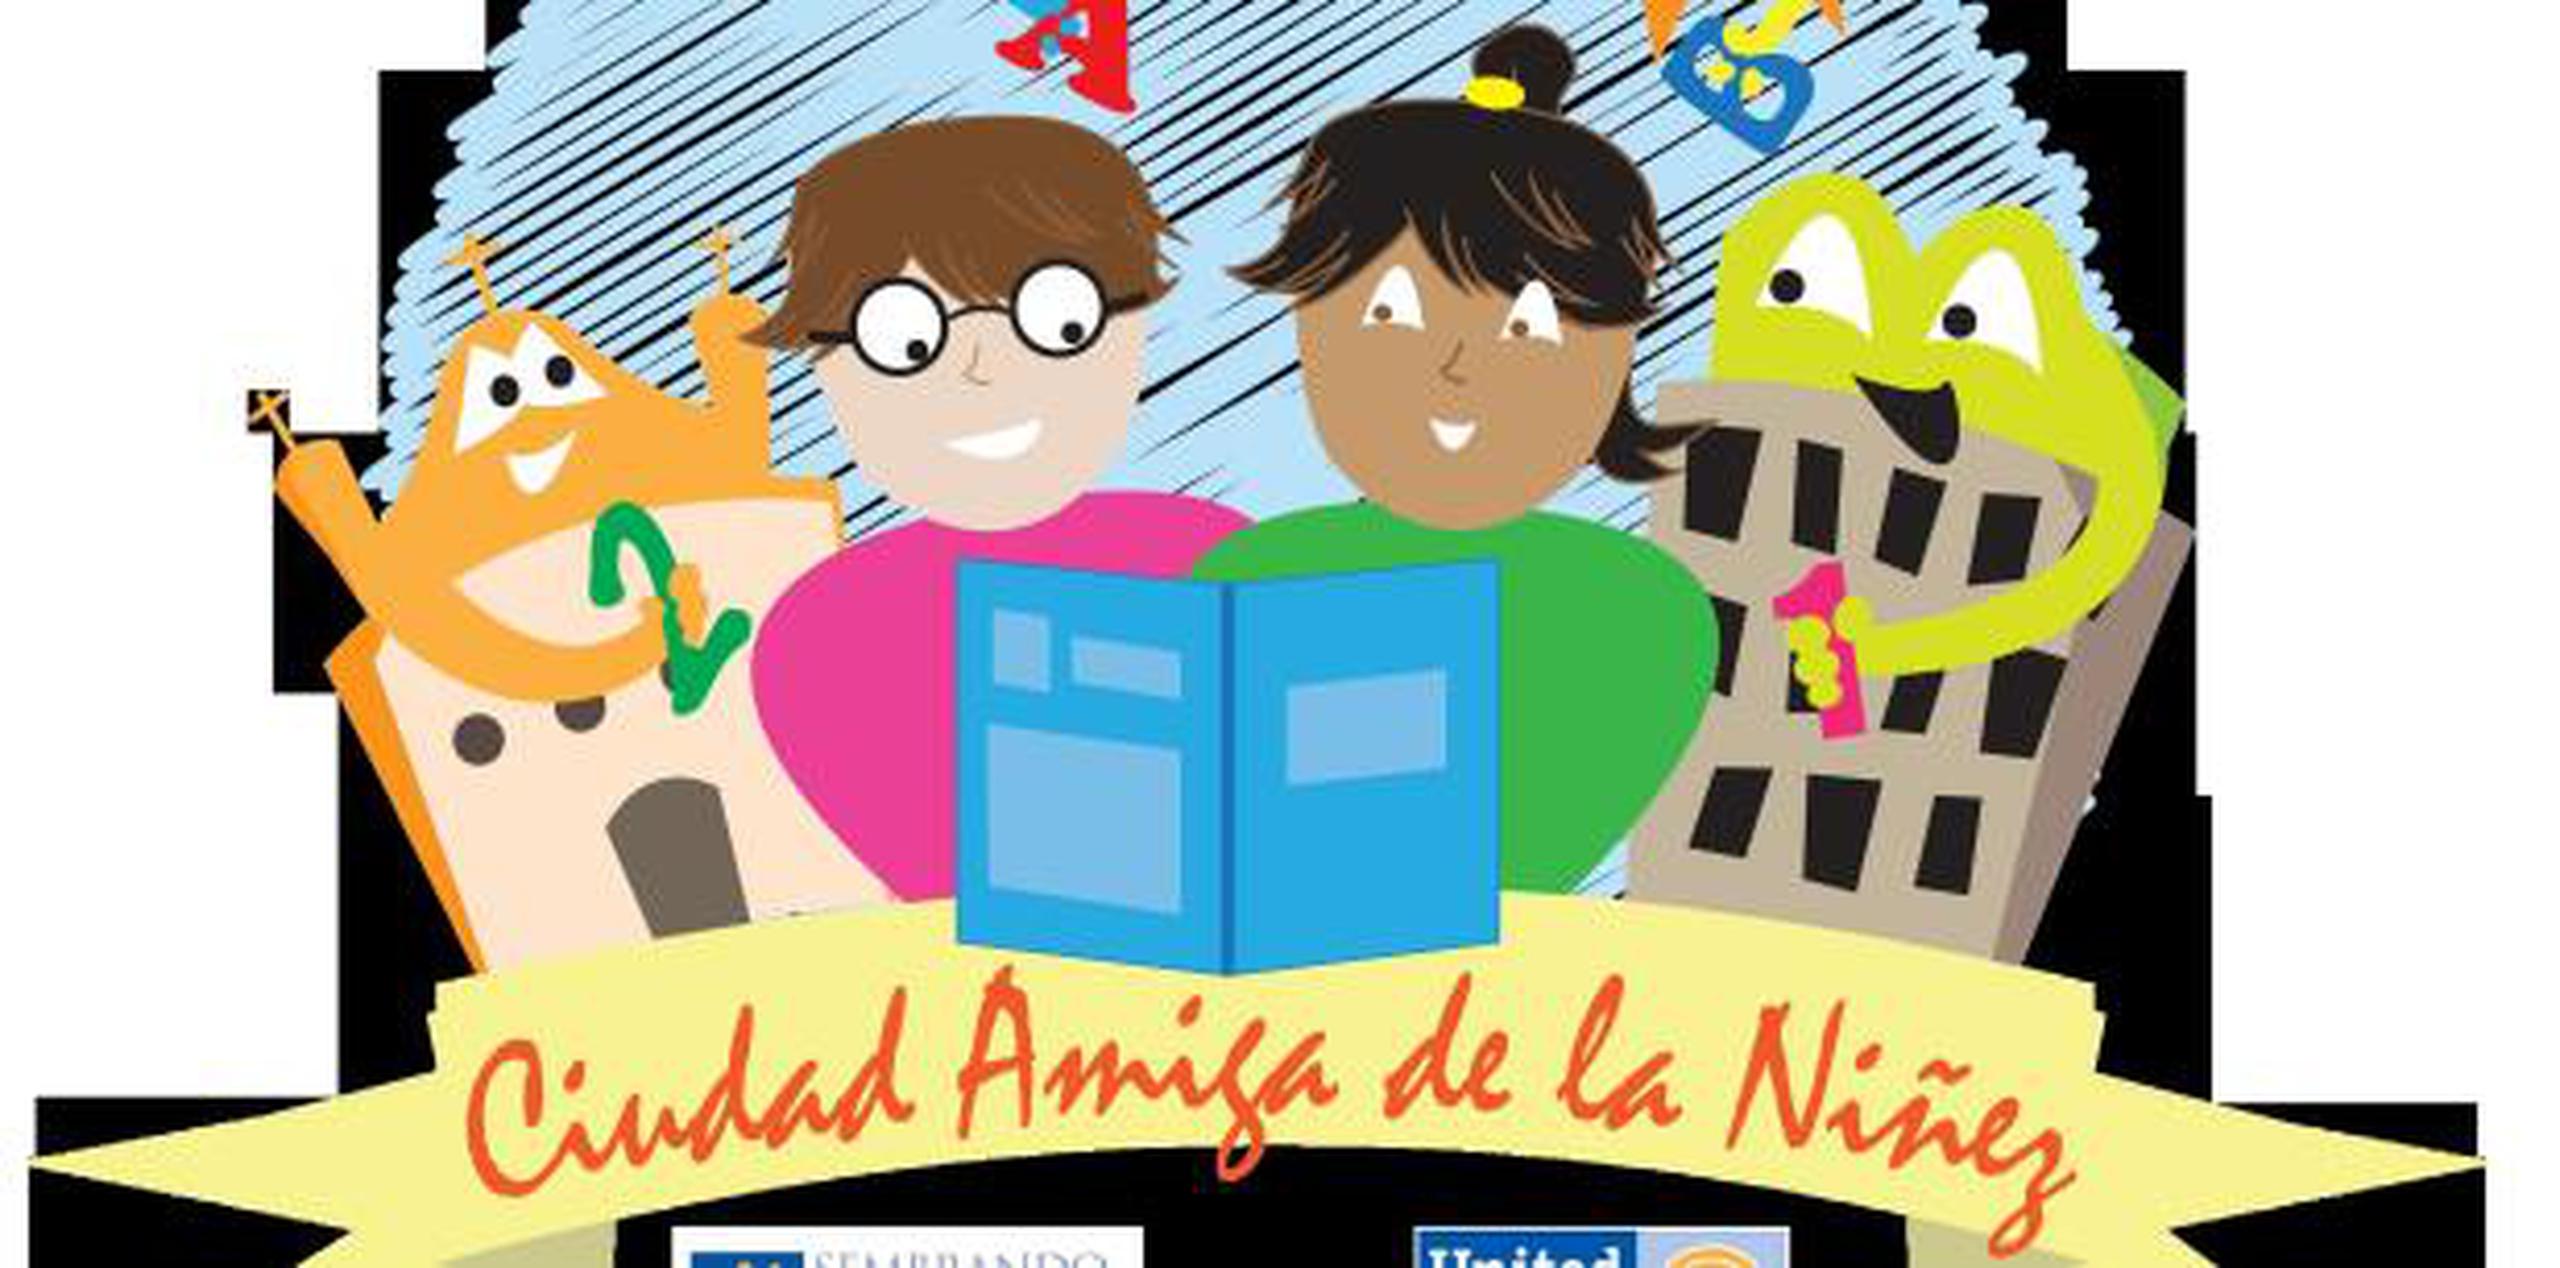 Para más información acerca del premio Ciudad Amiga de la Niñez y para confirmar la participación,  favor de comunicarse al 787-728-8500 extensiones 345, 224 ó 270.